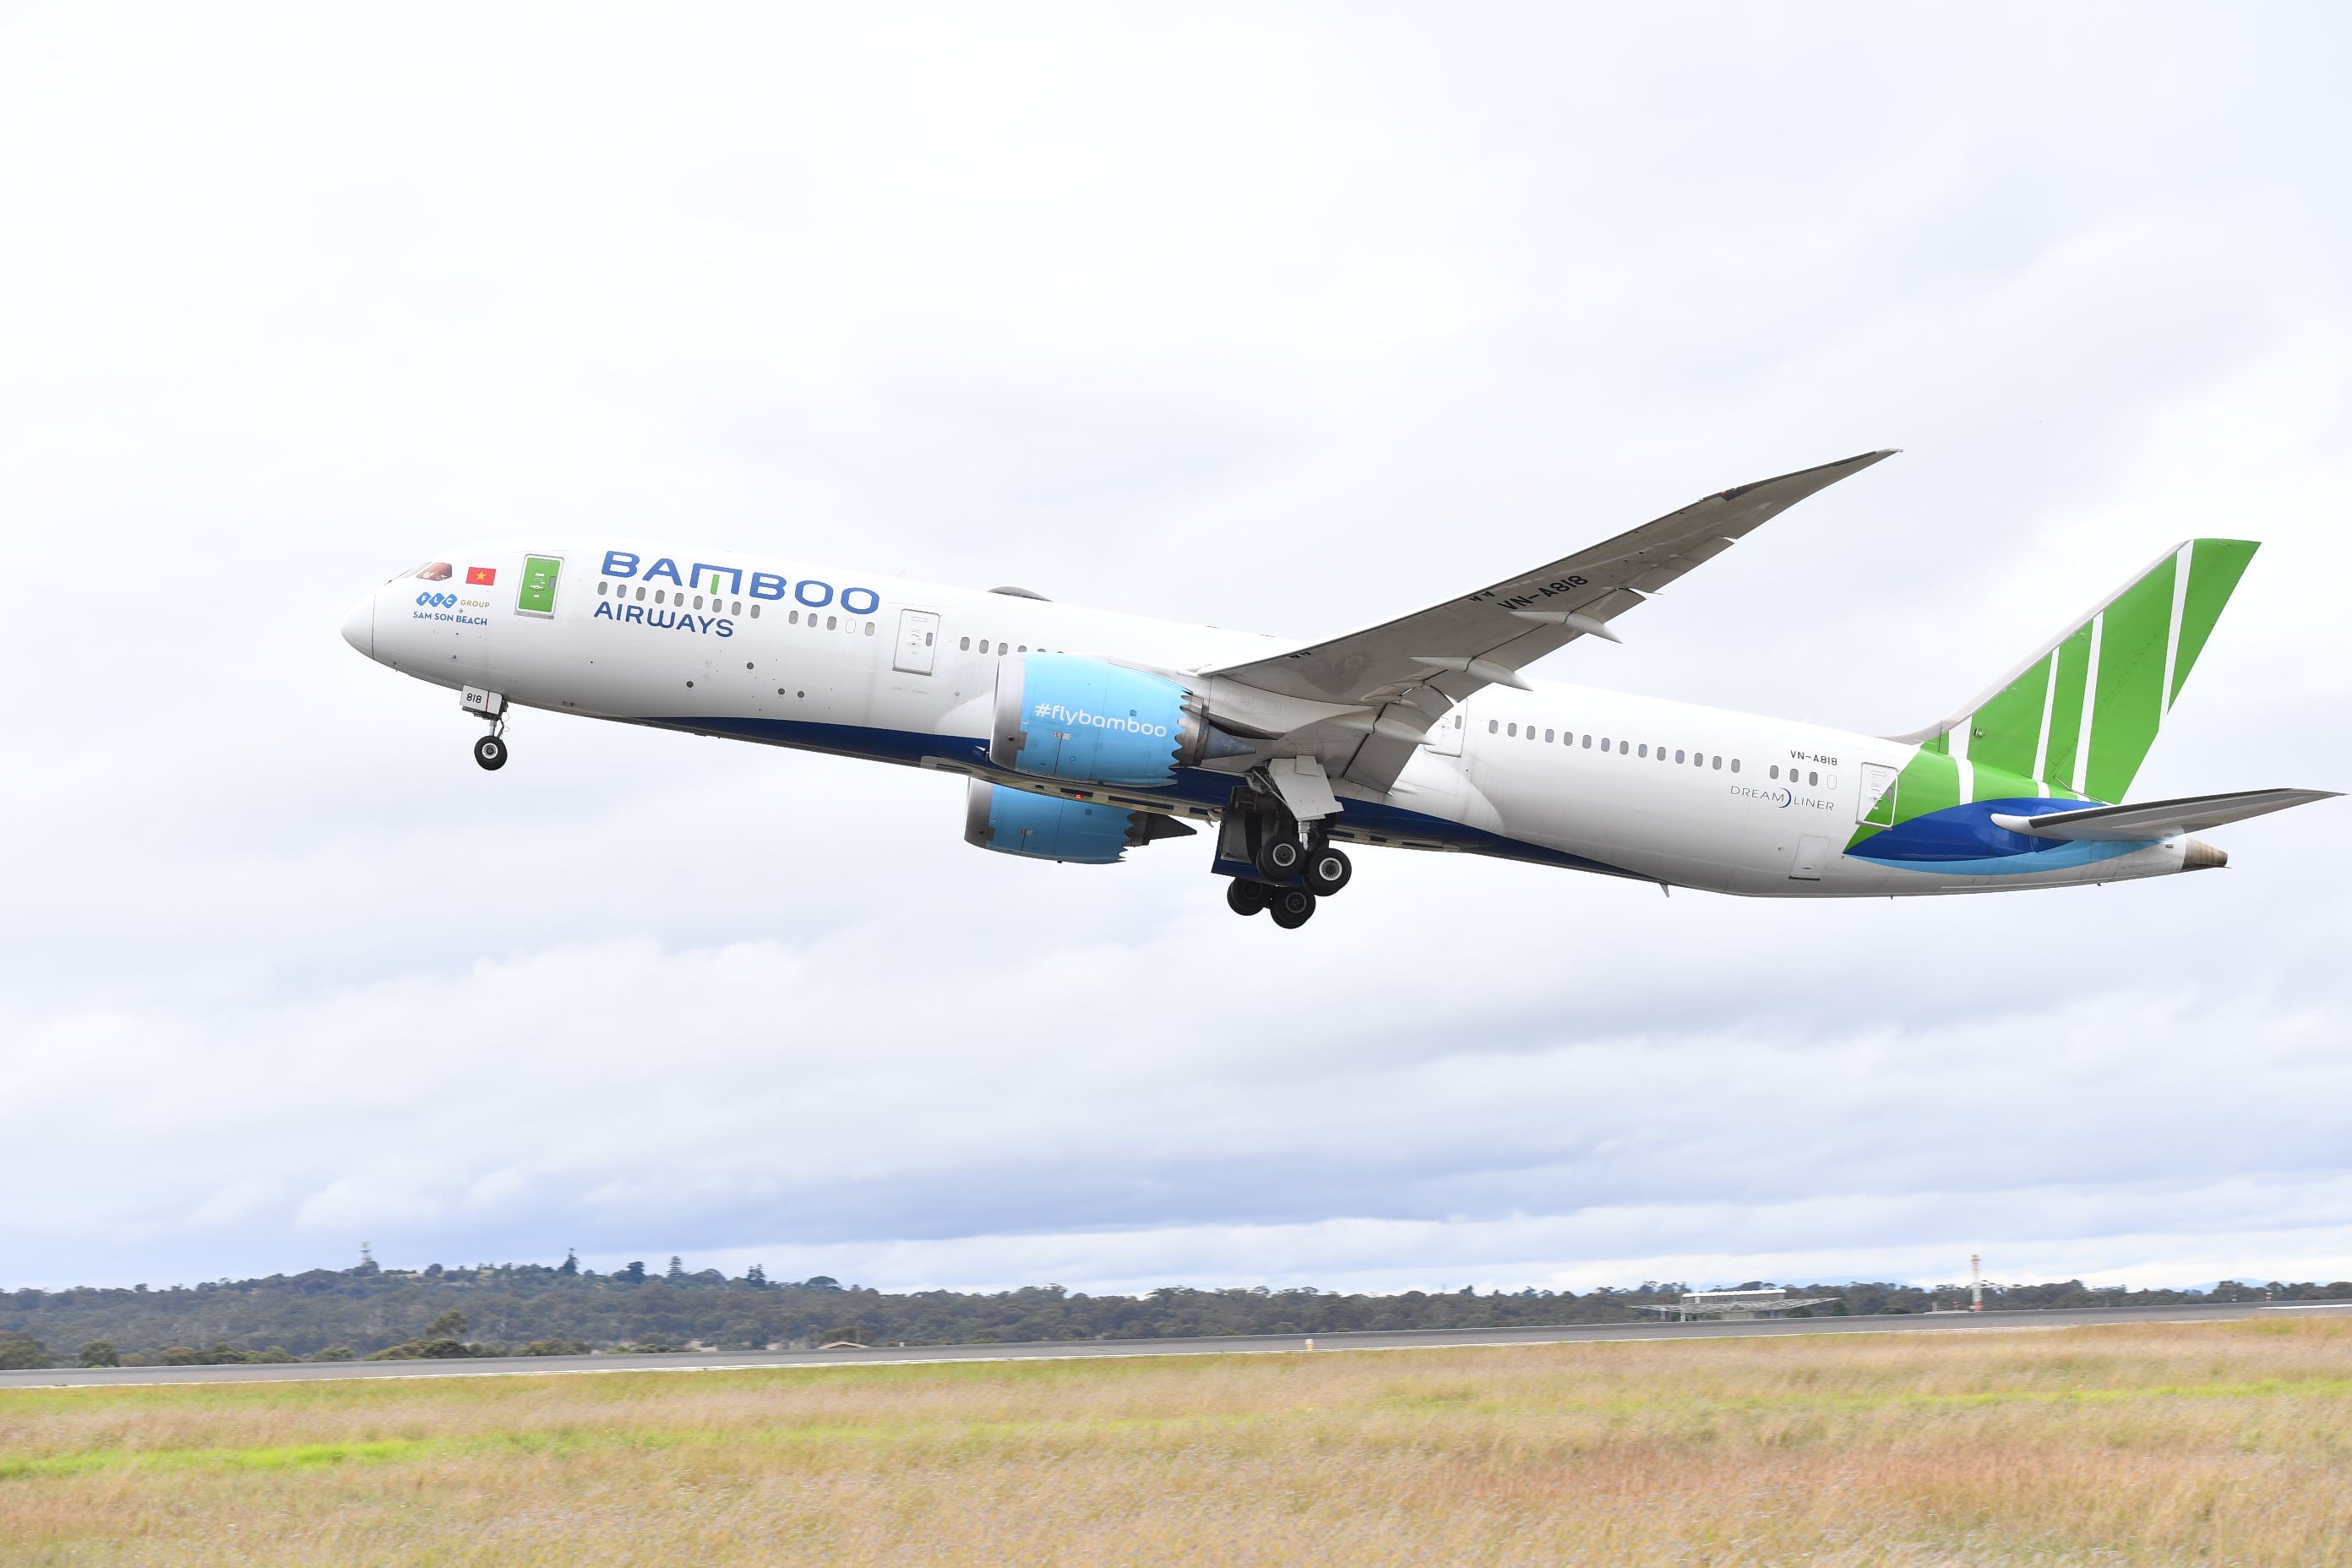 Bay Úc cùng Bamboo Airways ngay hôm nay, giảm giá liền tay 1.169.000 đồng - 4